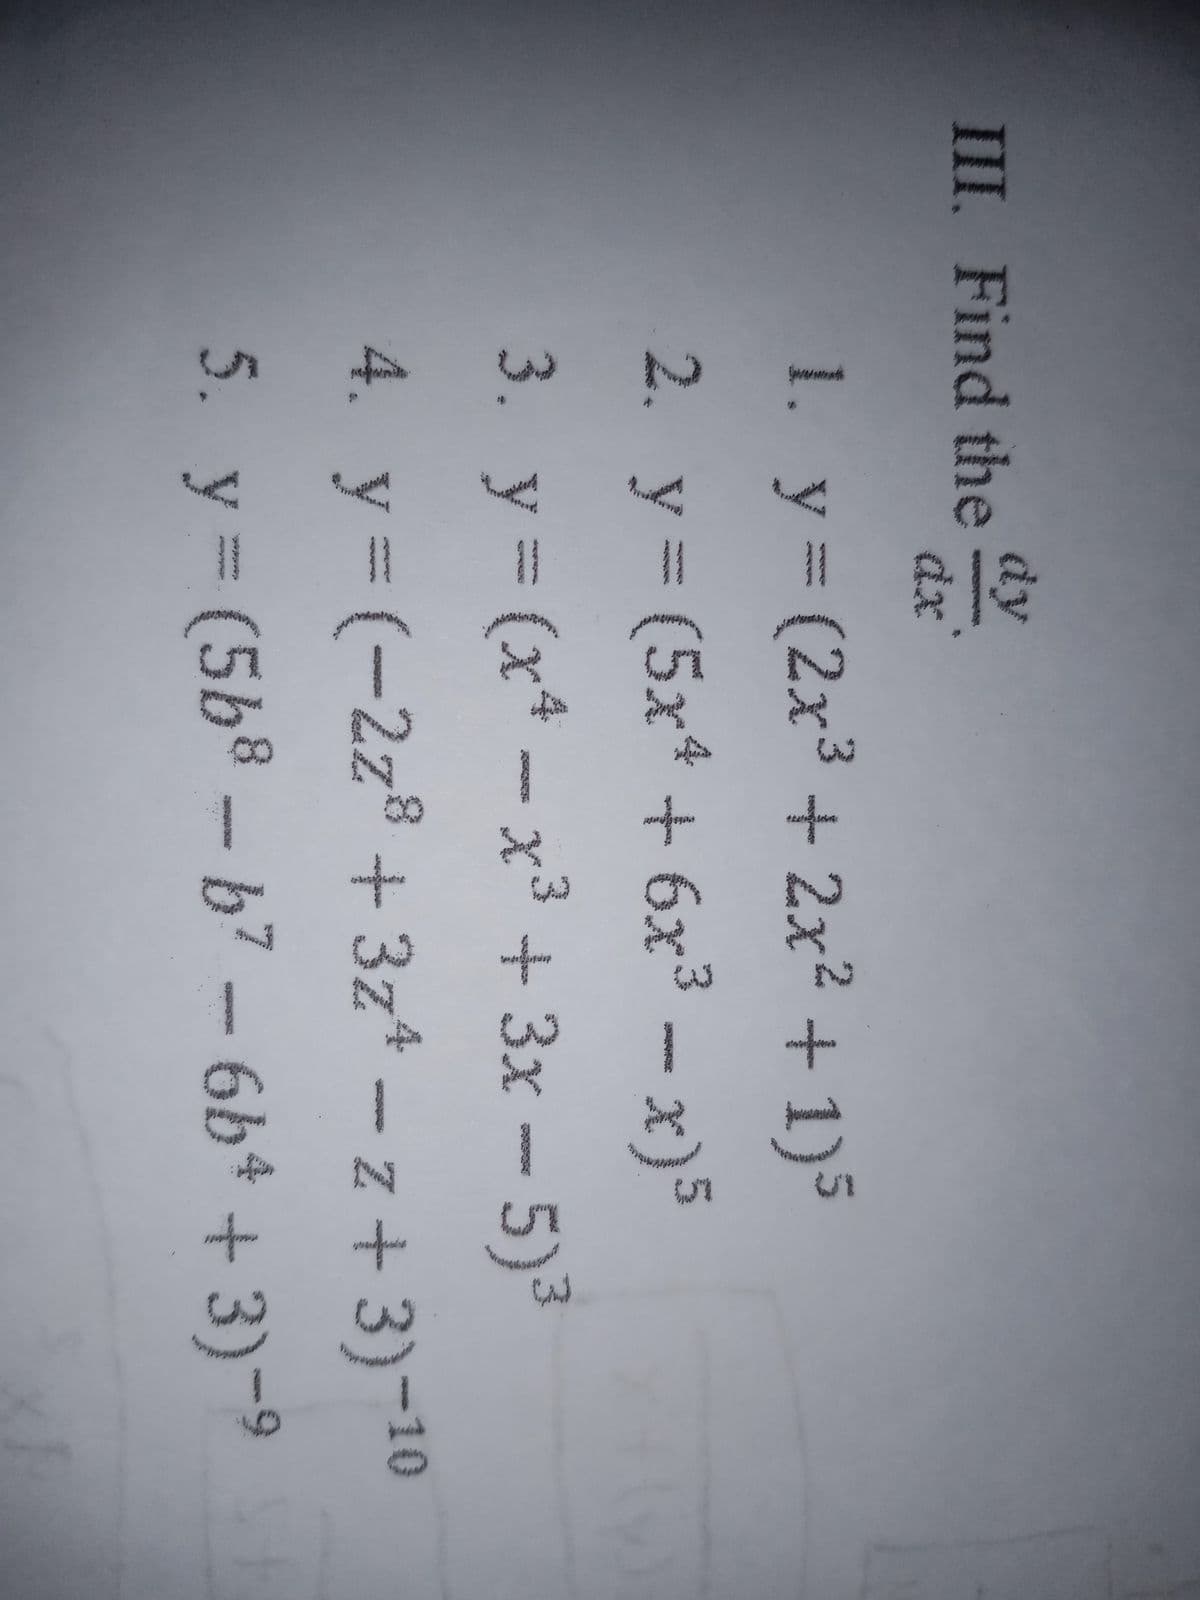 dy
III. Find the
d:
1. y (2x3 + 2x2 + 1)5
4x7
2. y - x)5
(5x* +6x3
3. y (x* -x3 + 3x - 5)3
4. y (-2z8 + 3z* – z + 3)-10
5. y= (5b8 - b7 - 6b* + 3)-9
